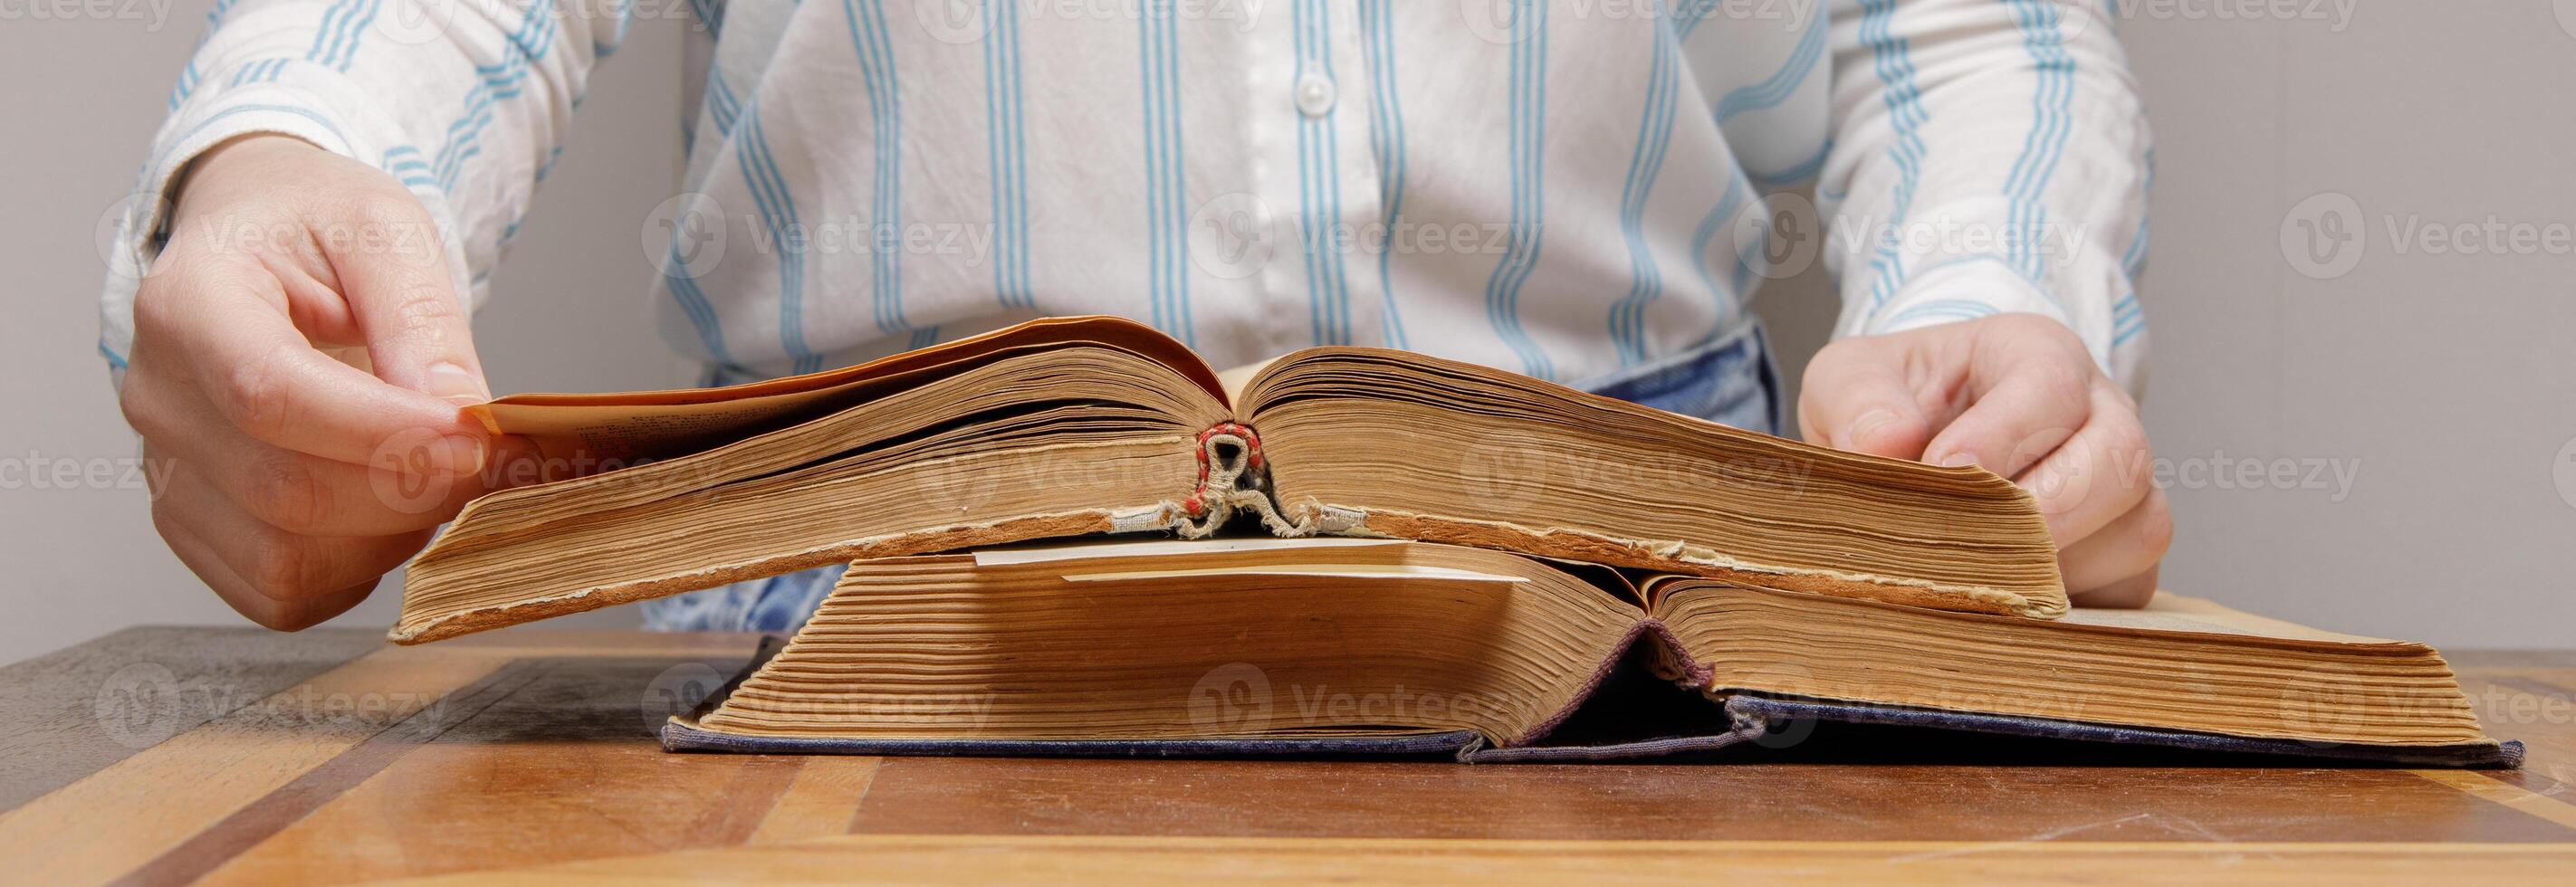 le mains de un invisible la personne feuille par le pages de un vieux livre mensonge sur une en bois table dans une Université ou école bibliothèque. photo